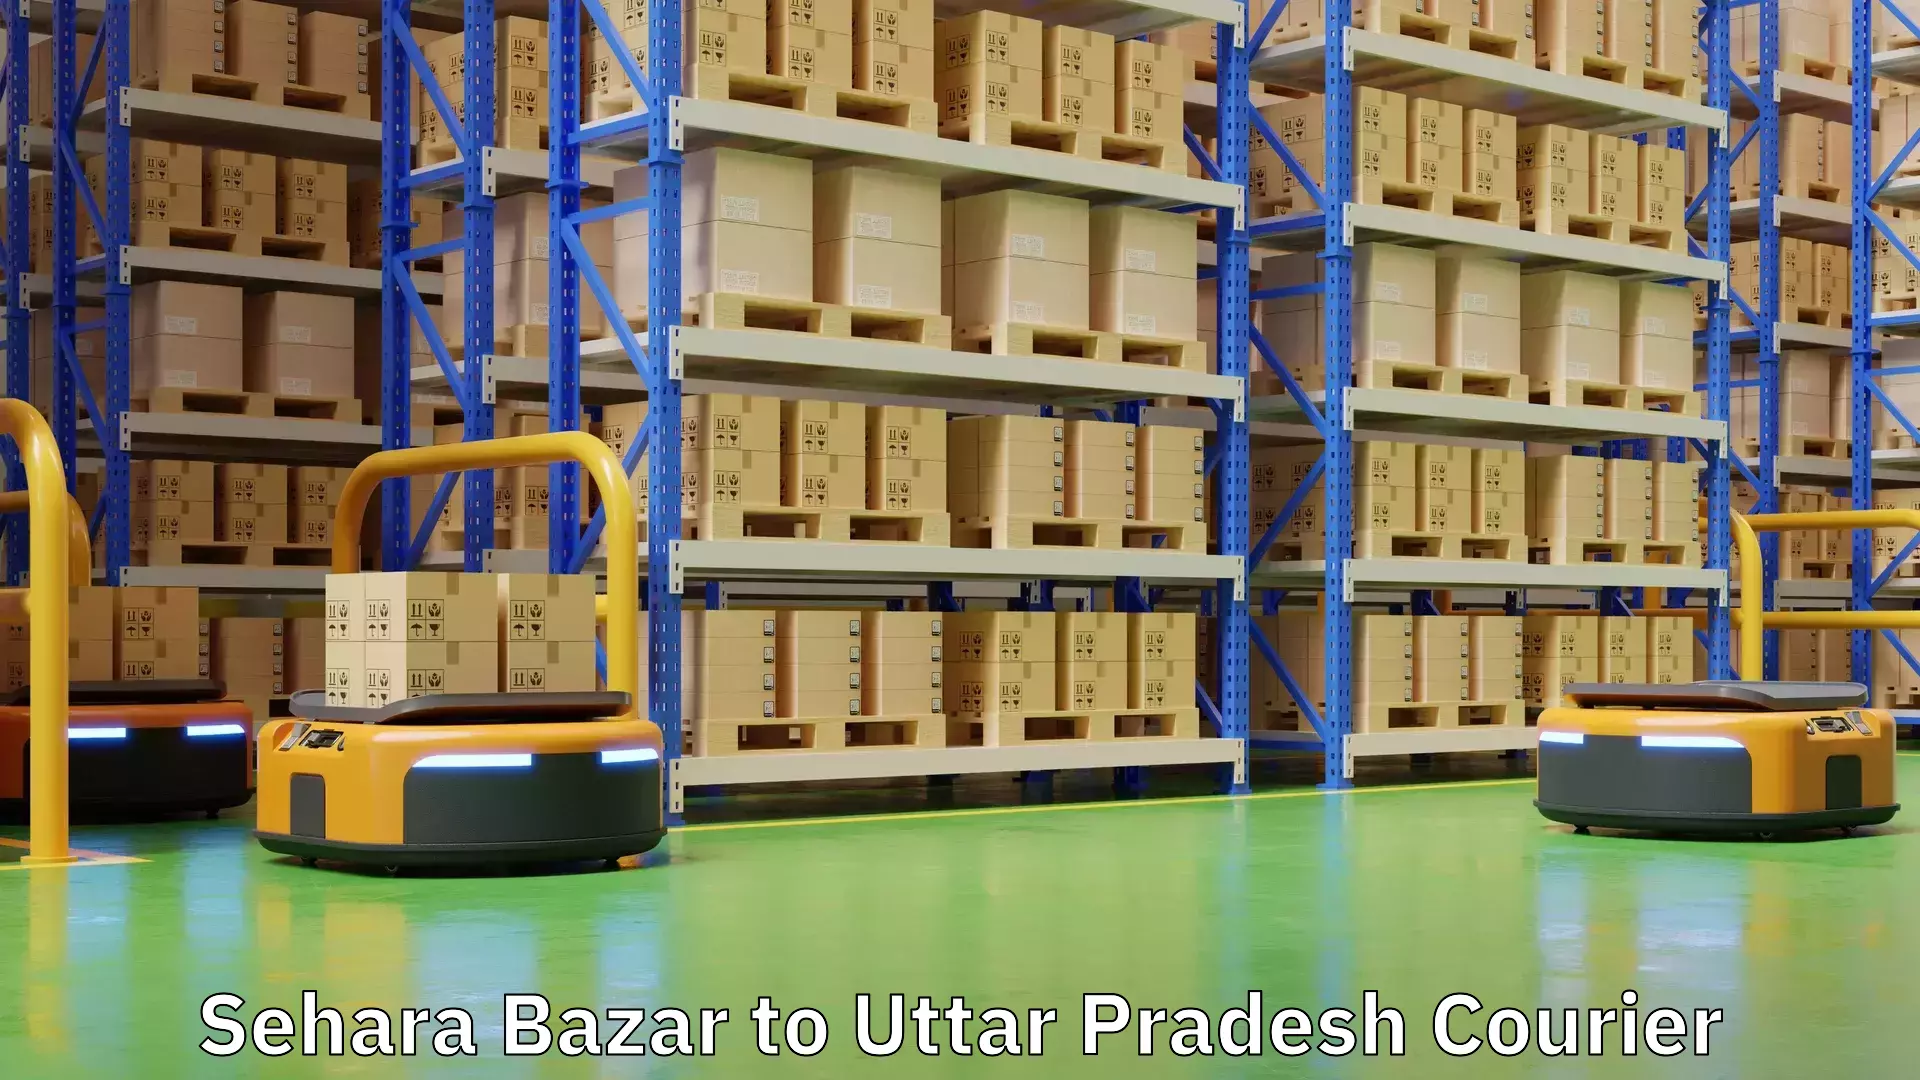 Efficient freight service Sehara Bazar to Uttar Pradesh